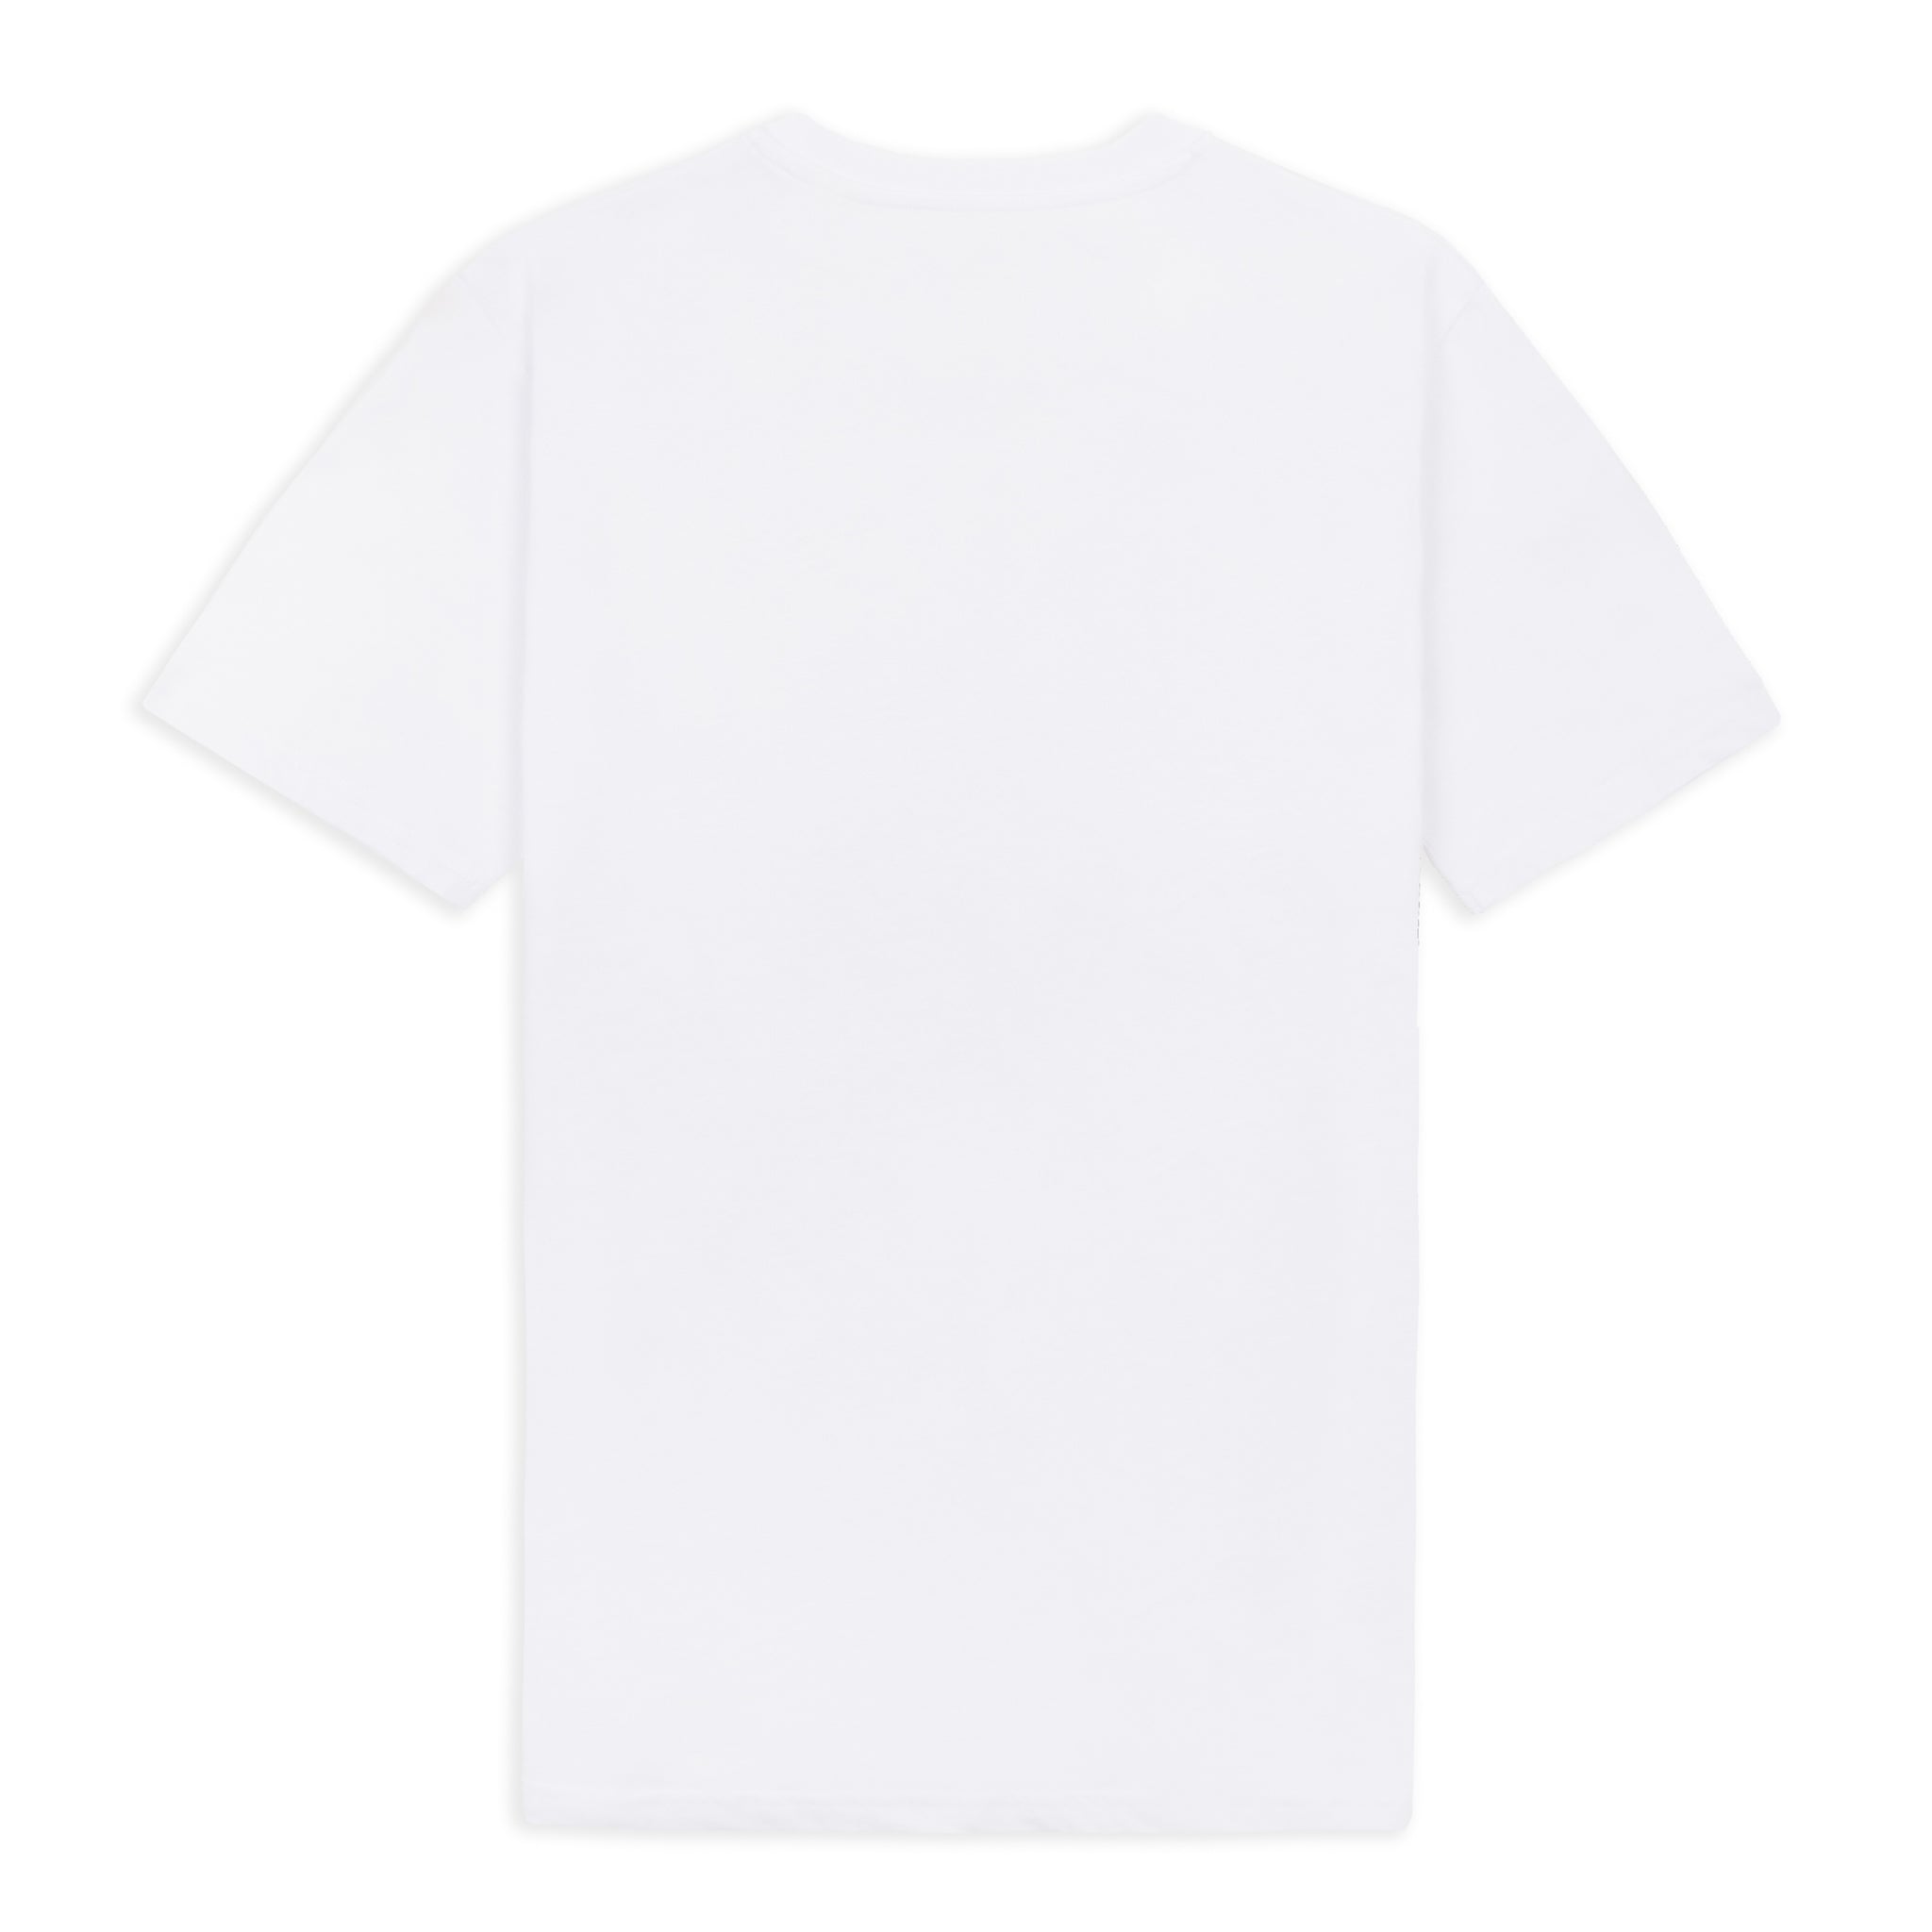 Dove White 30 Year™ T-Shirt